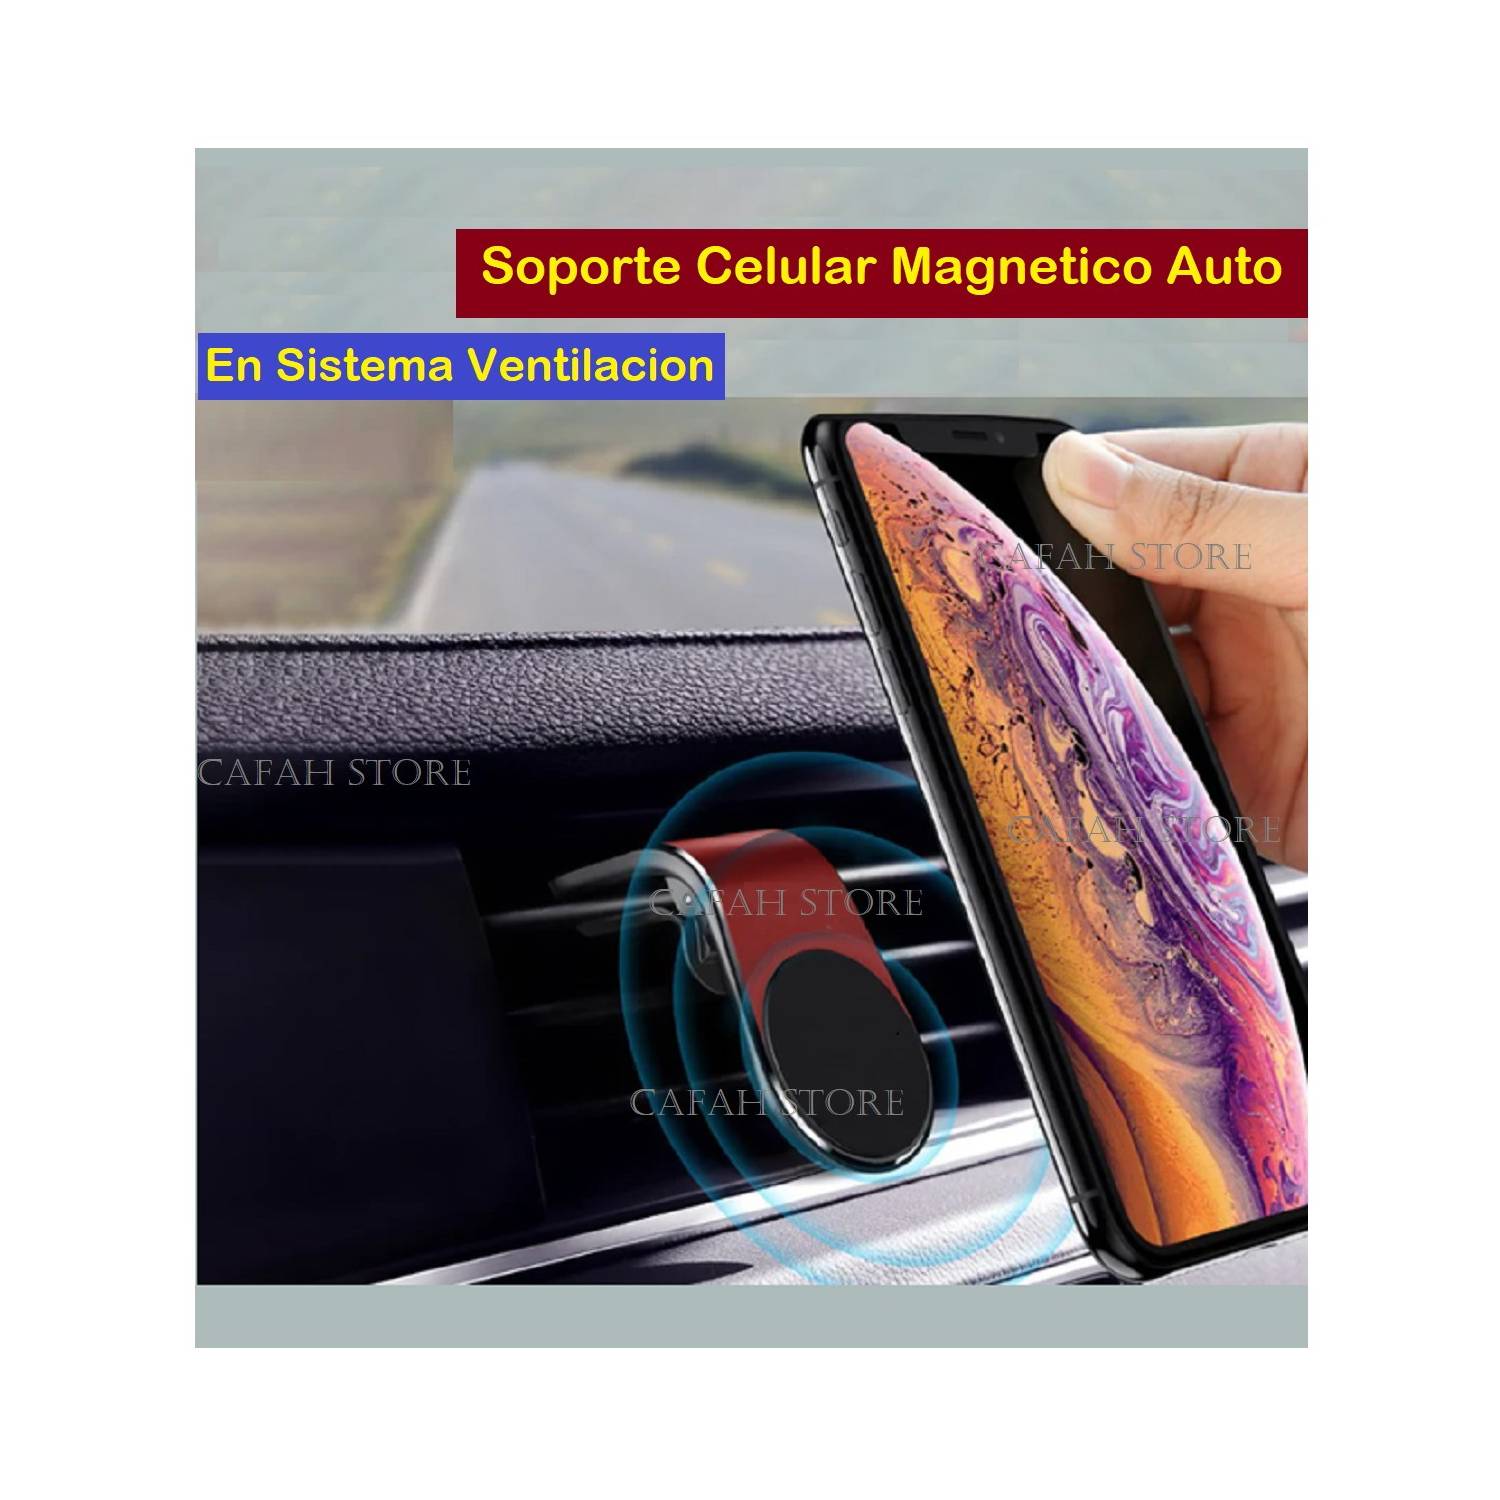 Soporte Celular AUTO Ventilación con Imán Magnético - Mount Holder